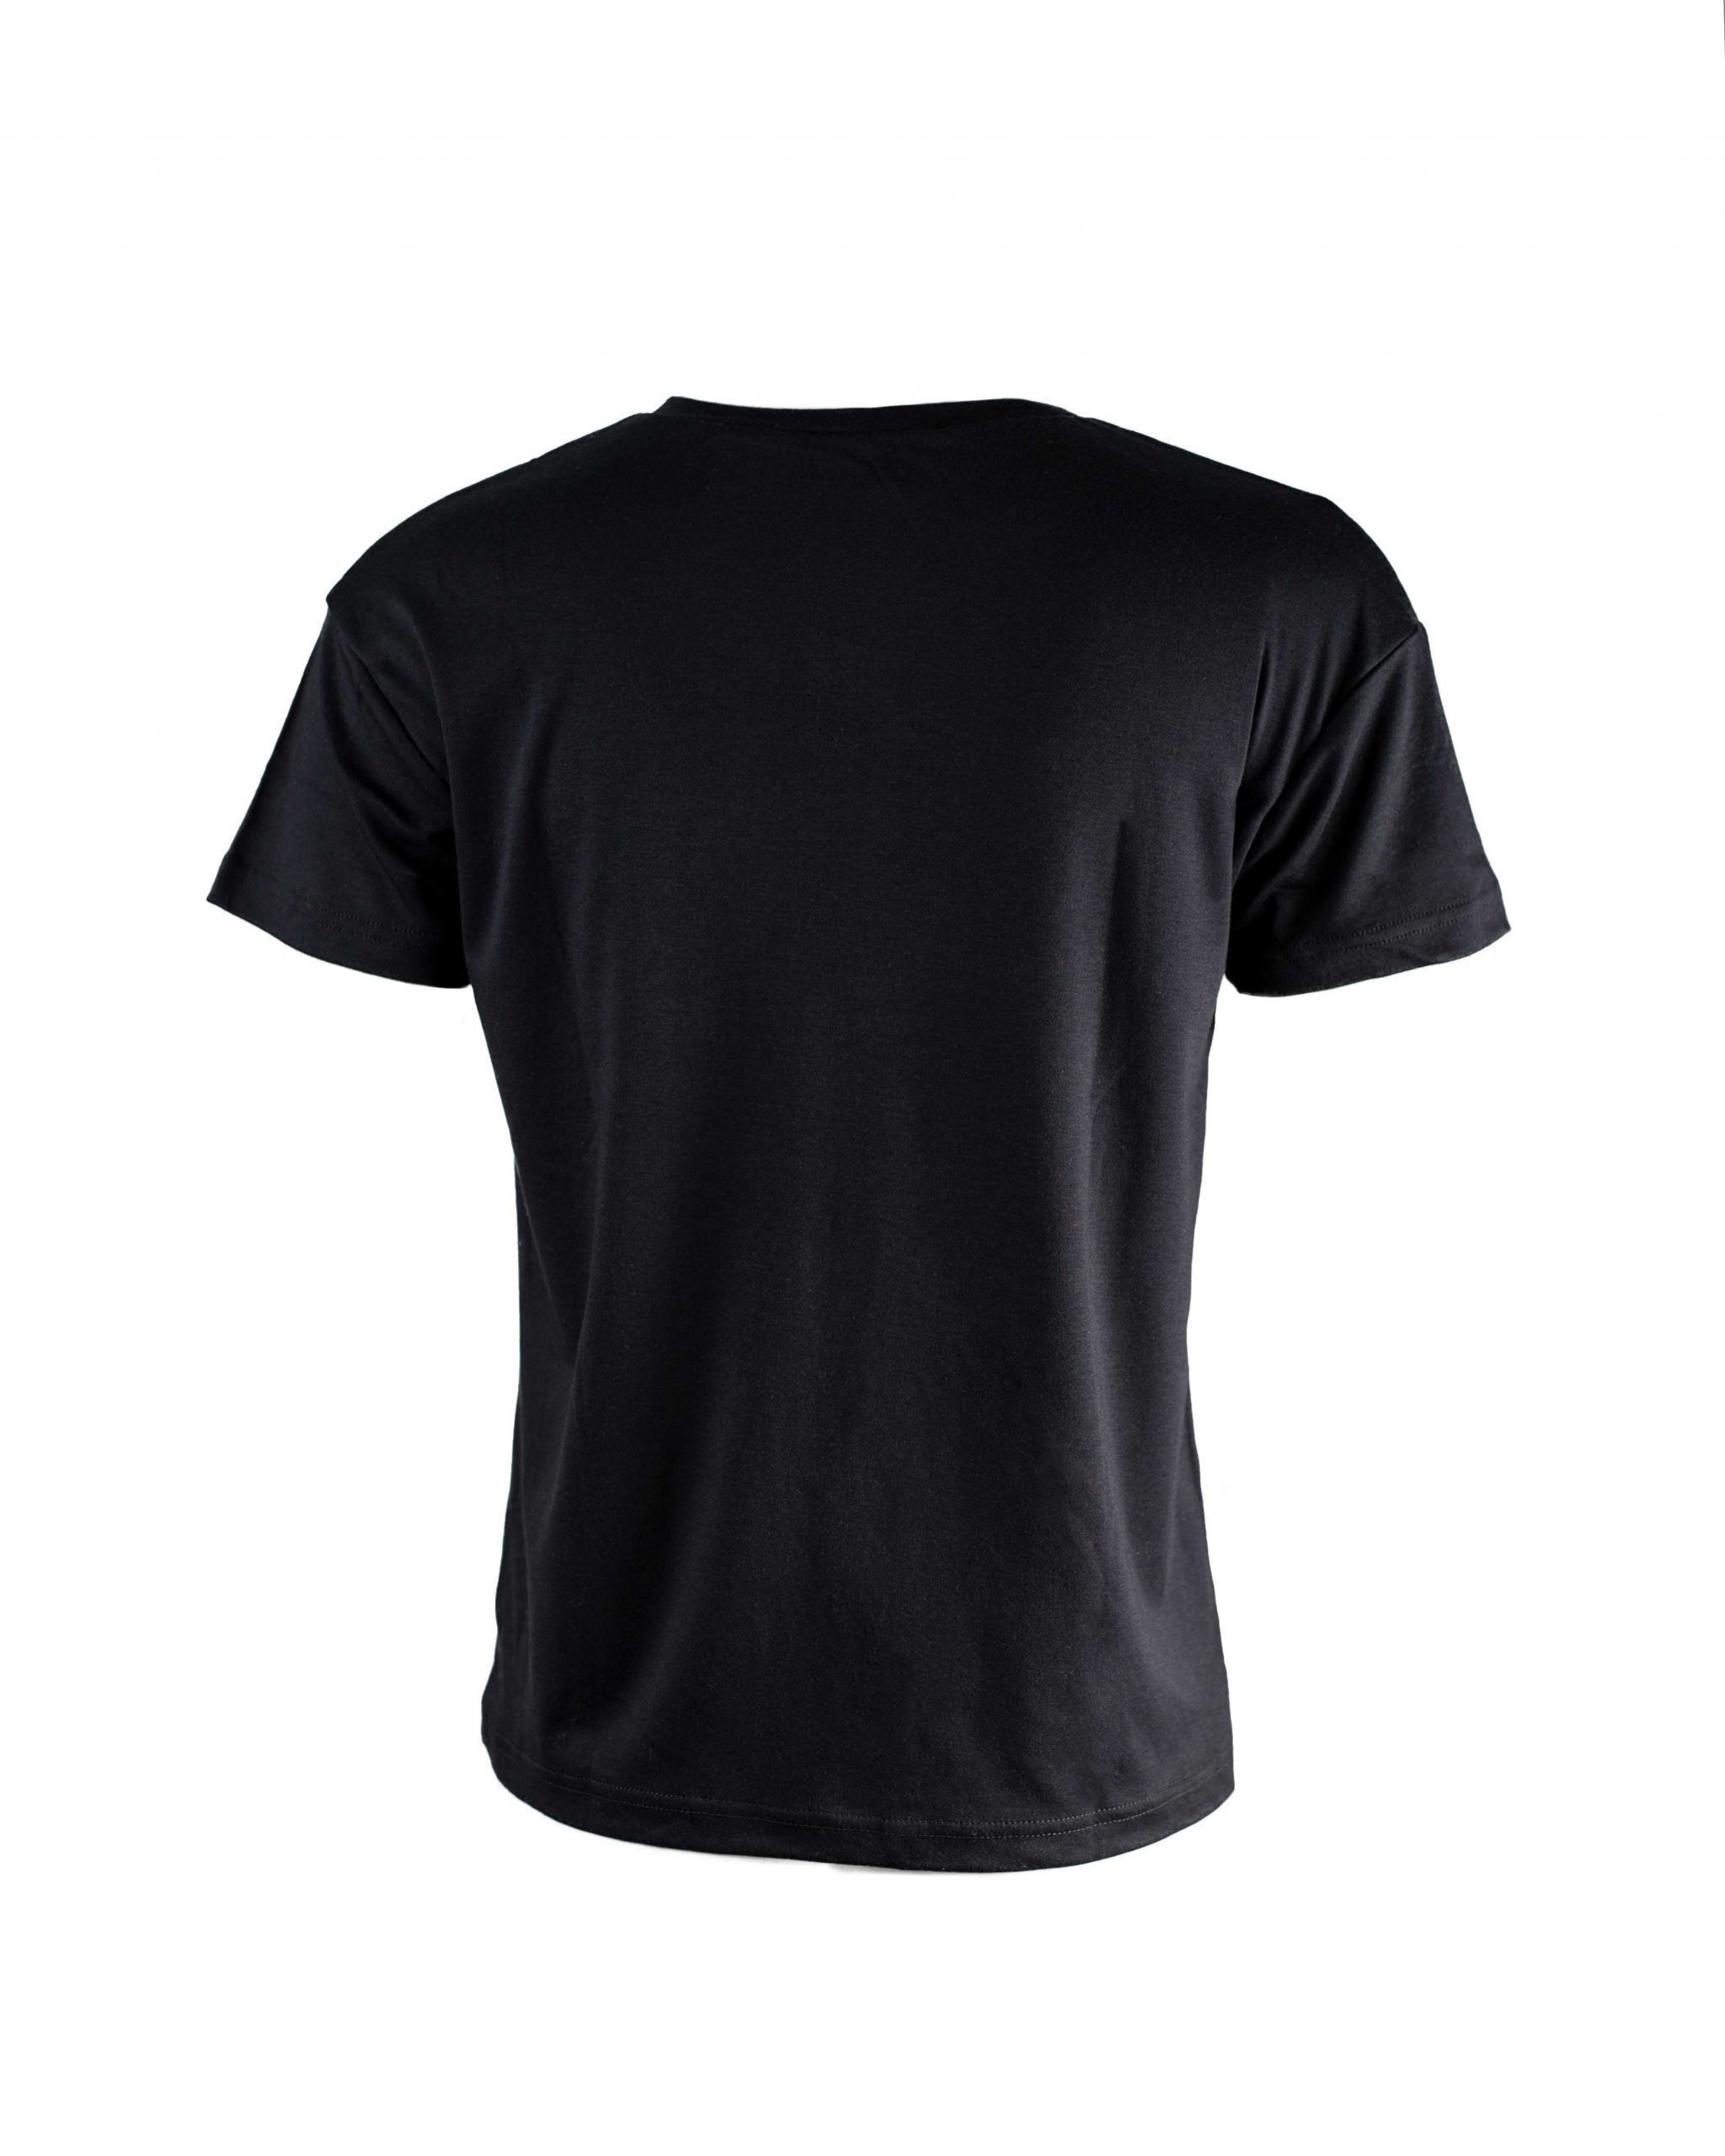 V-Ausschnitt SHIRT Schwarz V-NECK LADIES EMPIRE-THIRTEEN T-Shirt "EMPIRE-THIRTEEN" Logostickerei,